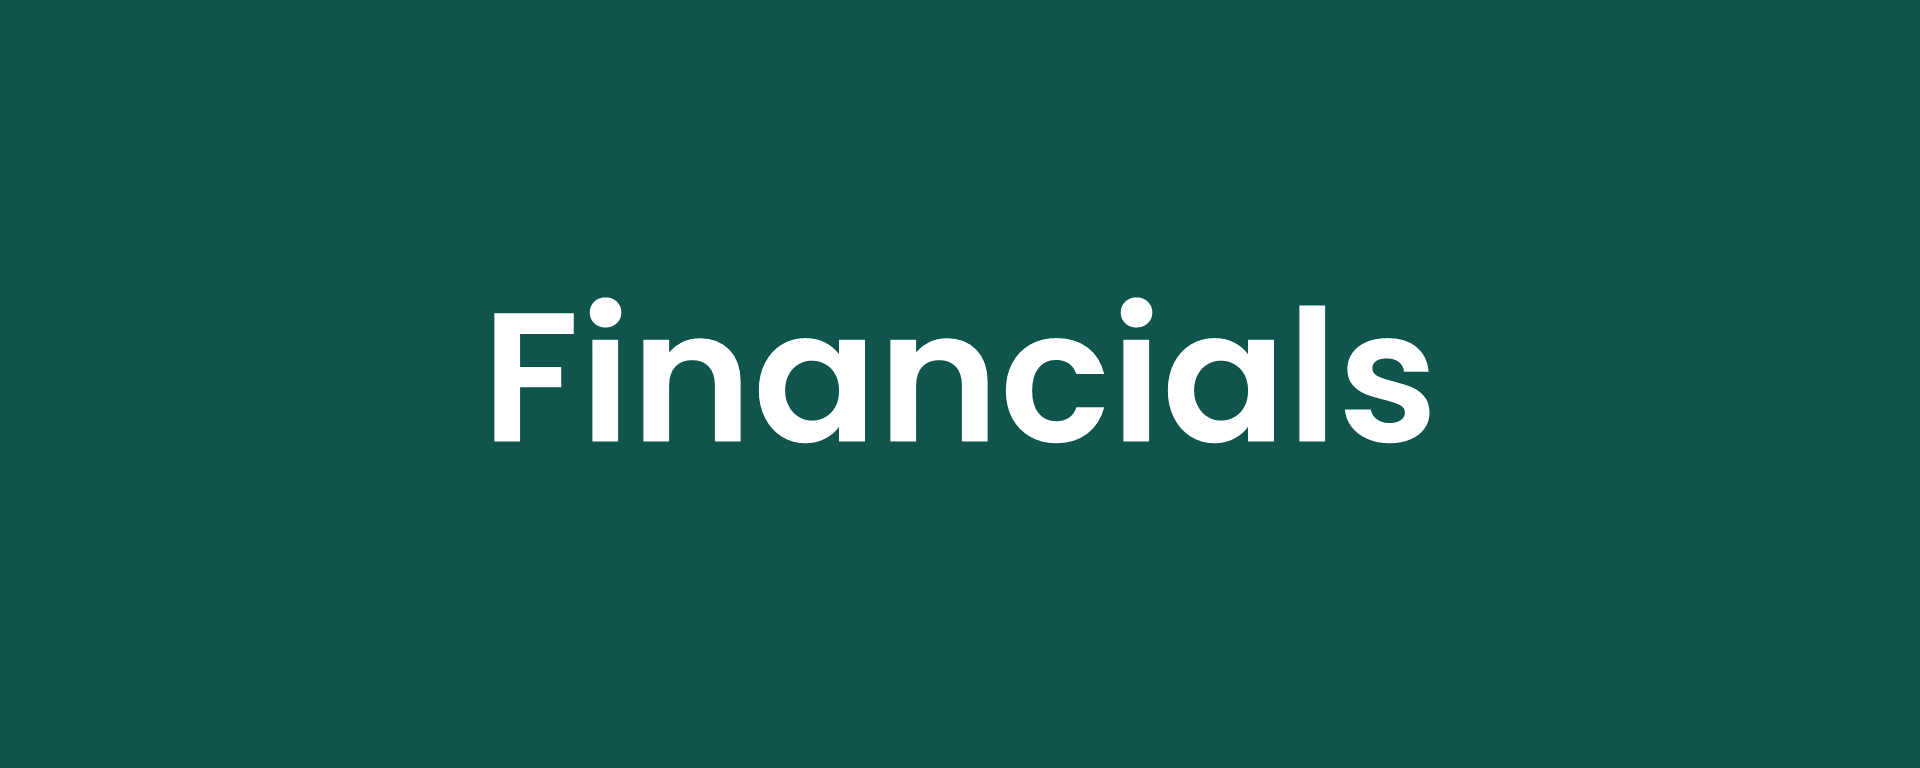 AR22_Financials Title.png